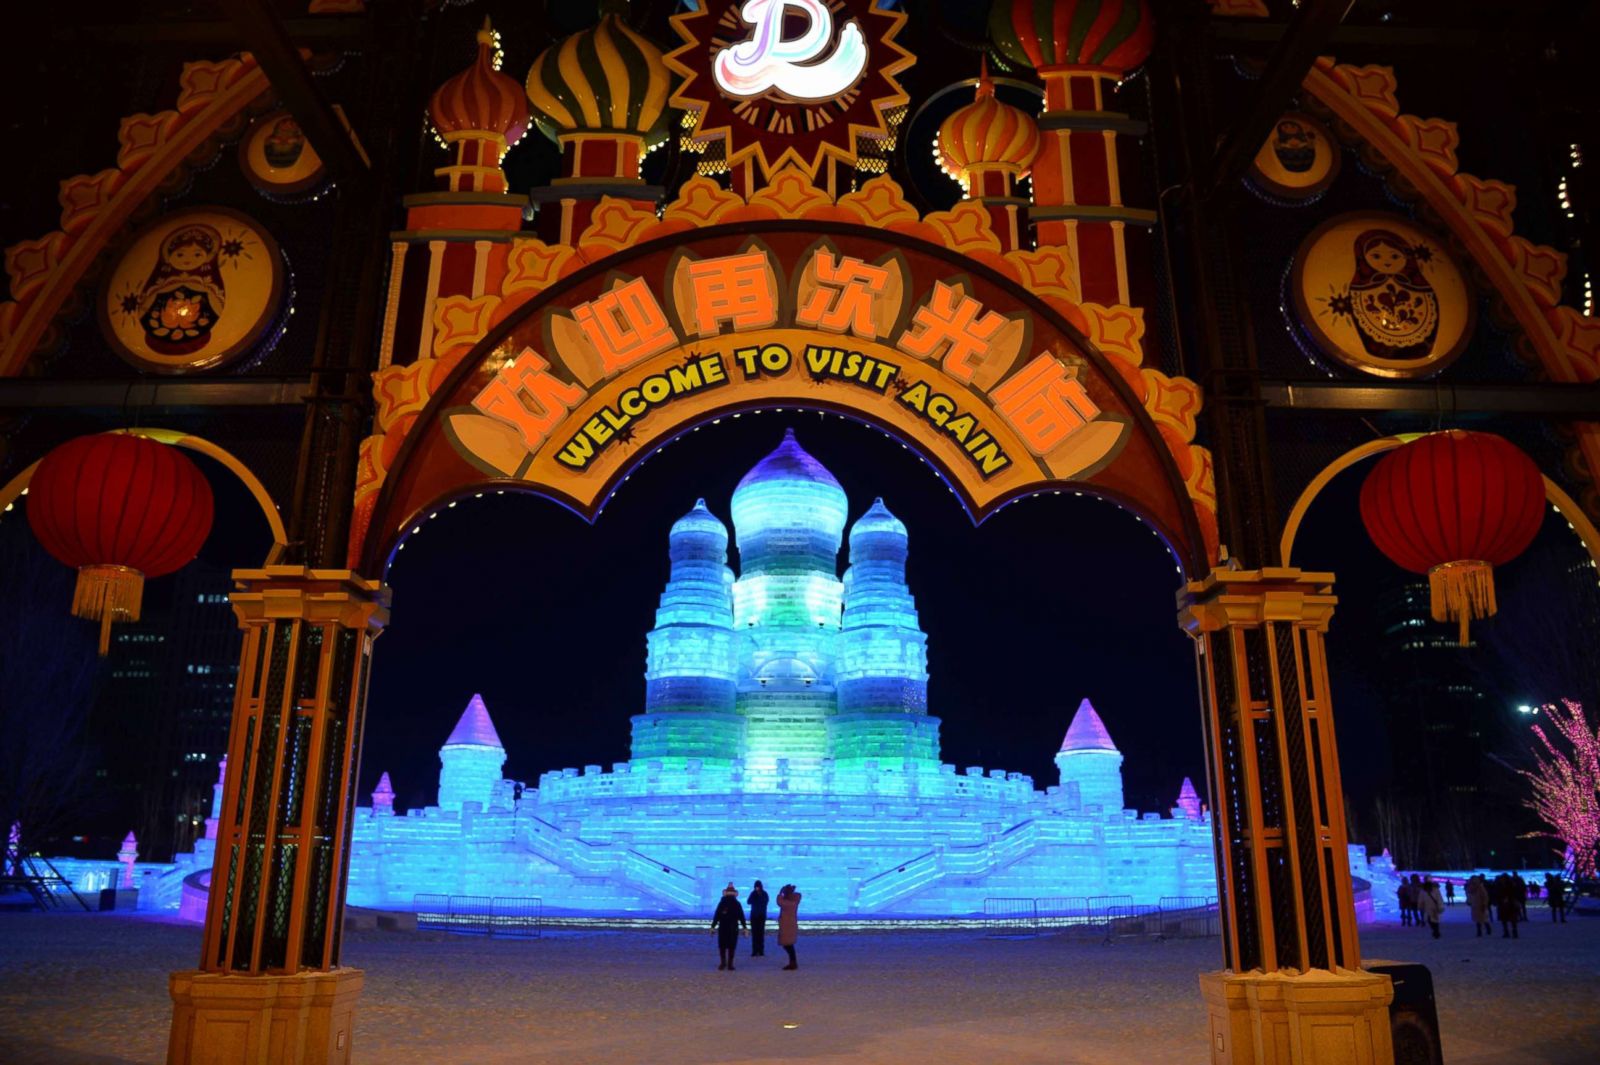 Annual Harbin Ice and Snow Festival Photos Image 101 ABC News